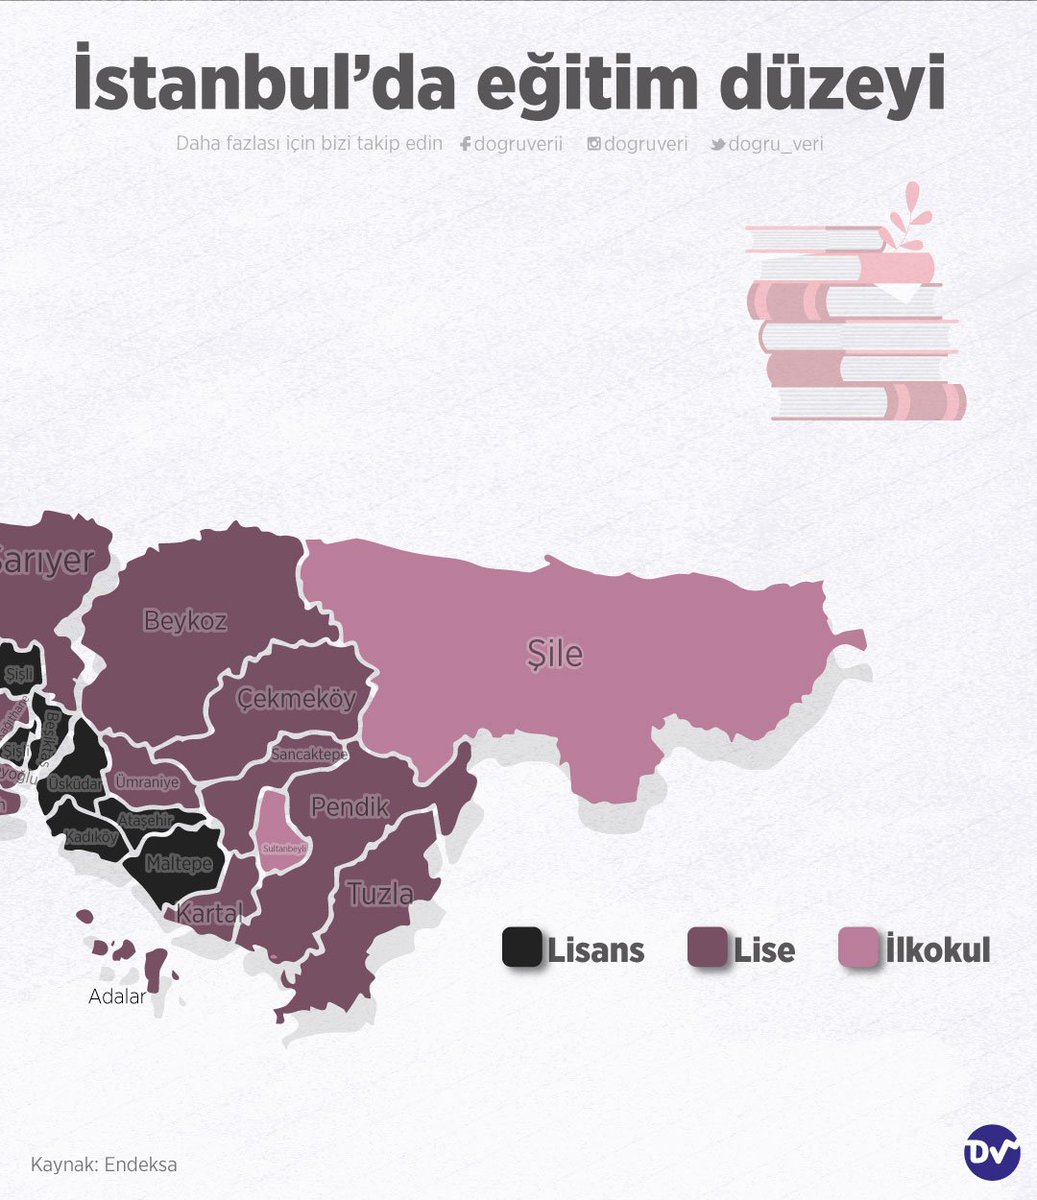 🏙 İstanbul'da yaşayanların eğitim düzeyini araştırdık. Anadolu yakasında Kadıköy, Üsküdar; Avrupa yakasında ise Beşiktaş, Bakırköy gibi daha çok sahil kesiminde bulunan ilçelerin lisans mezunu olduğu görülüyor.